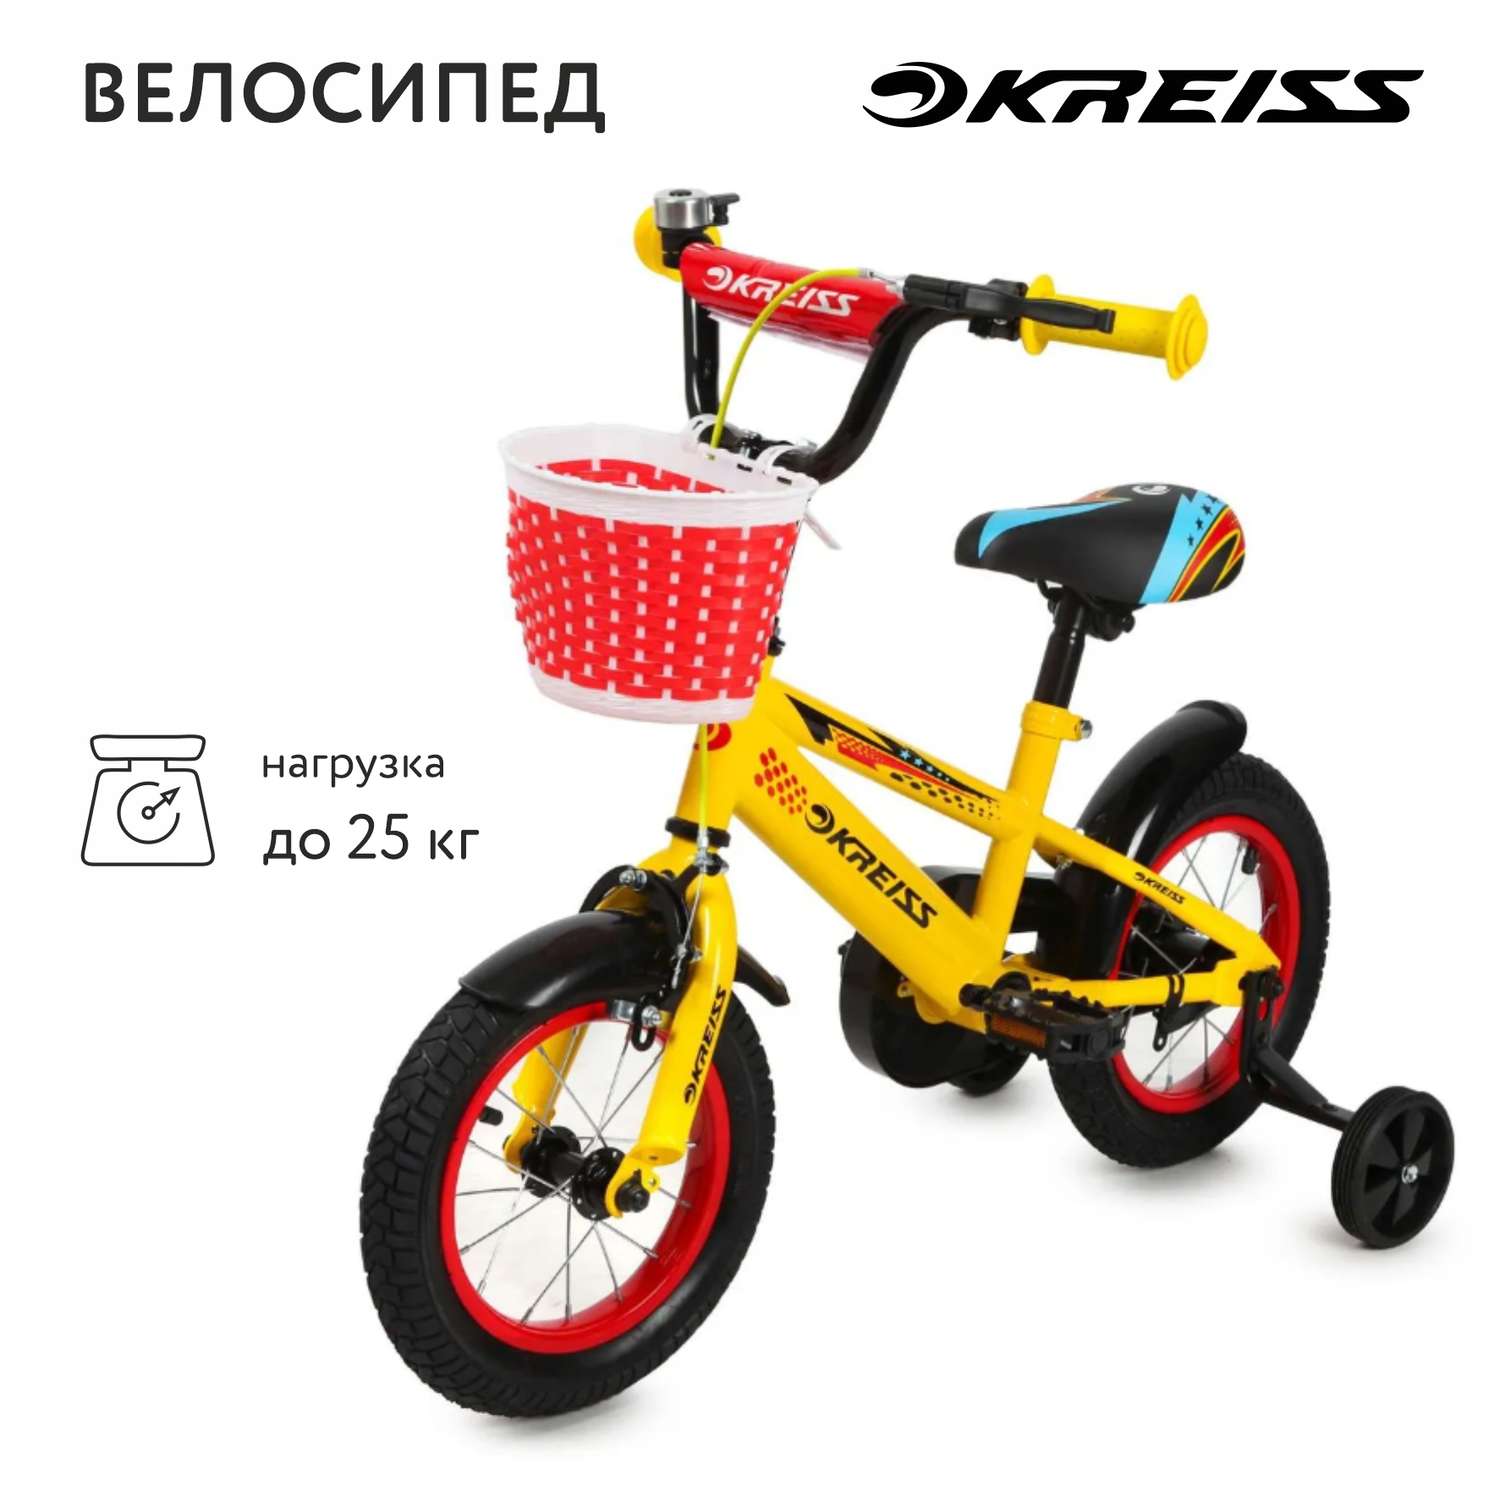 Велосипед Kreiss 12 дюймов OC-12U - фото 1